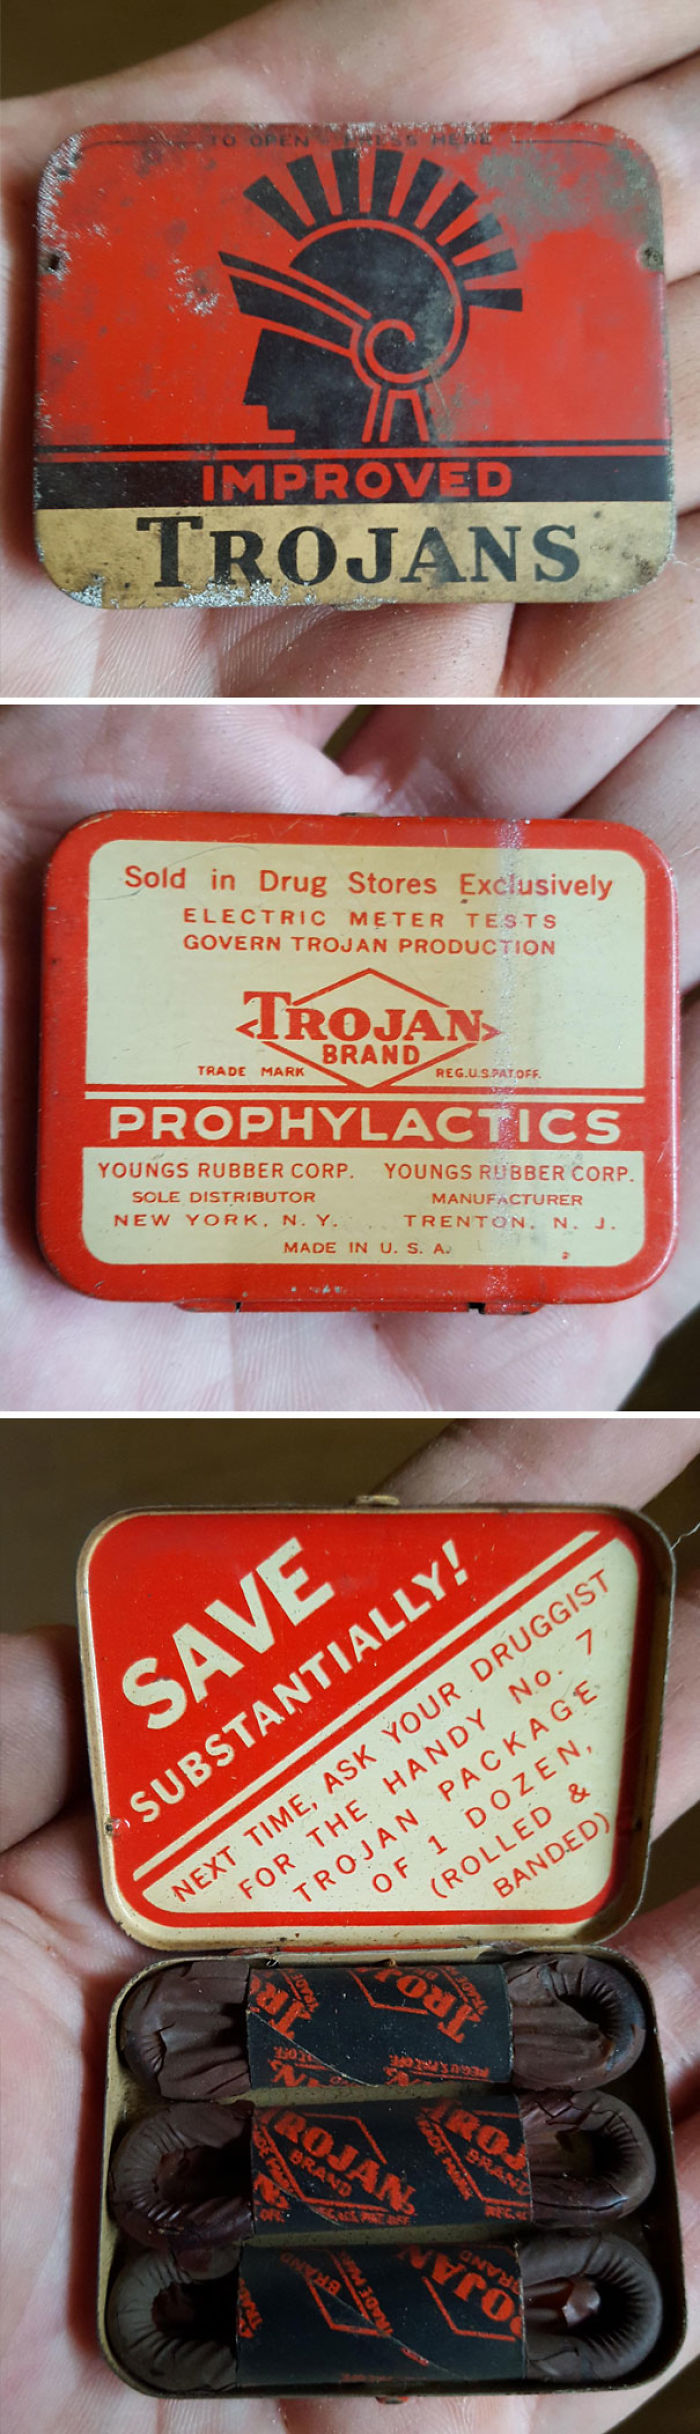 Encontré estos preservativos de hace 60 años en mi sótano